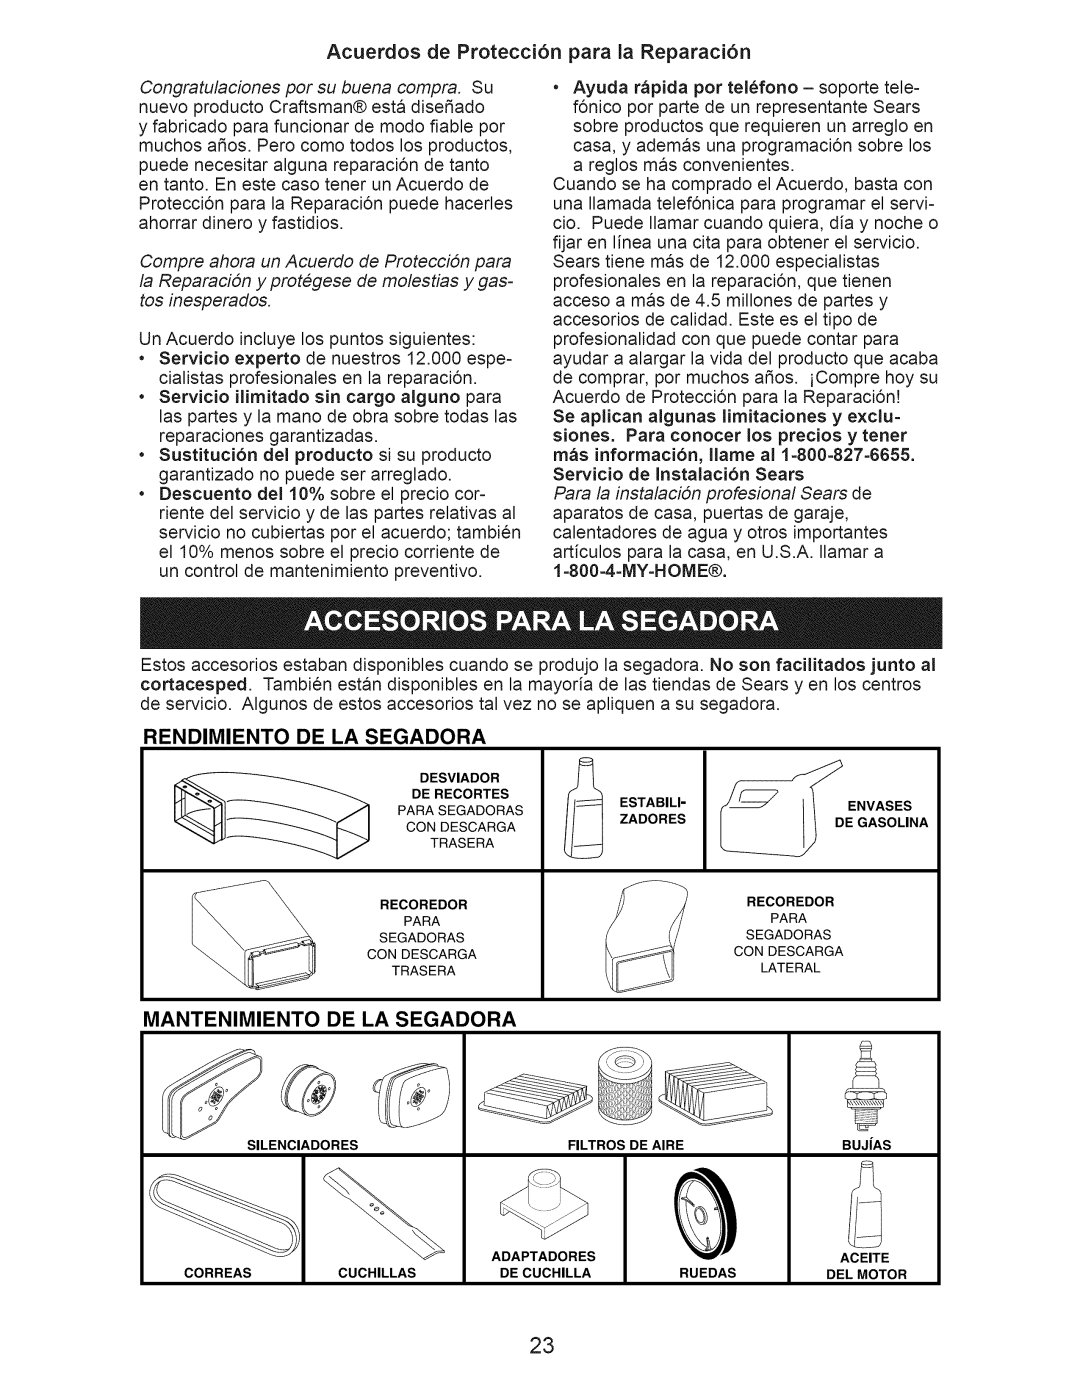 Craftsman 917.376390 manual Acuerdos de Protecci6n para la Reparaci6n, Rendimiento, De La Segadora, Mantenimiento 